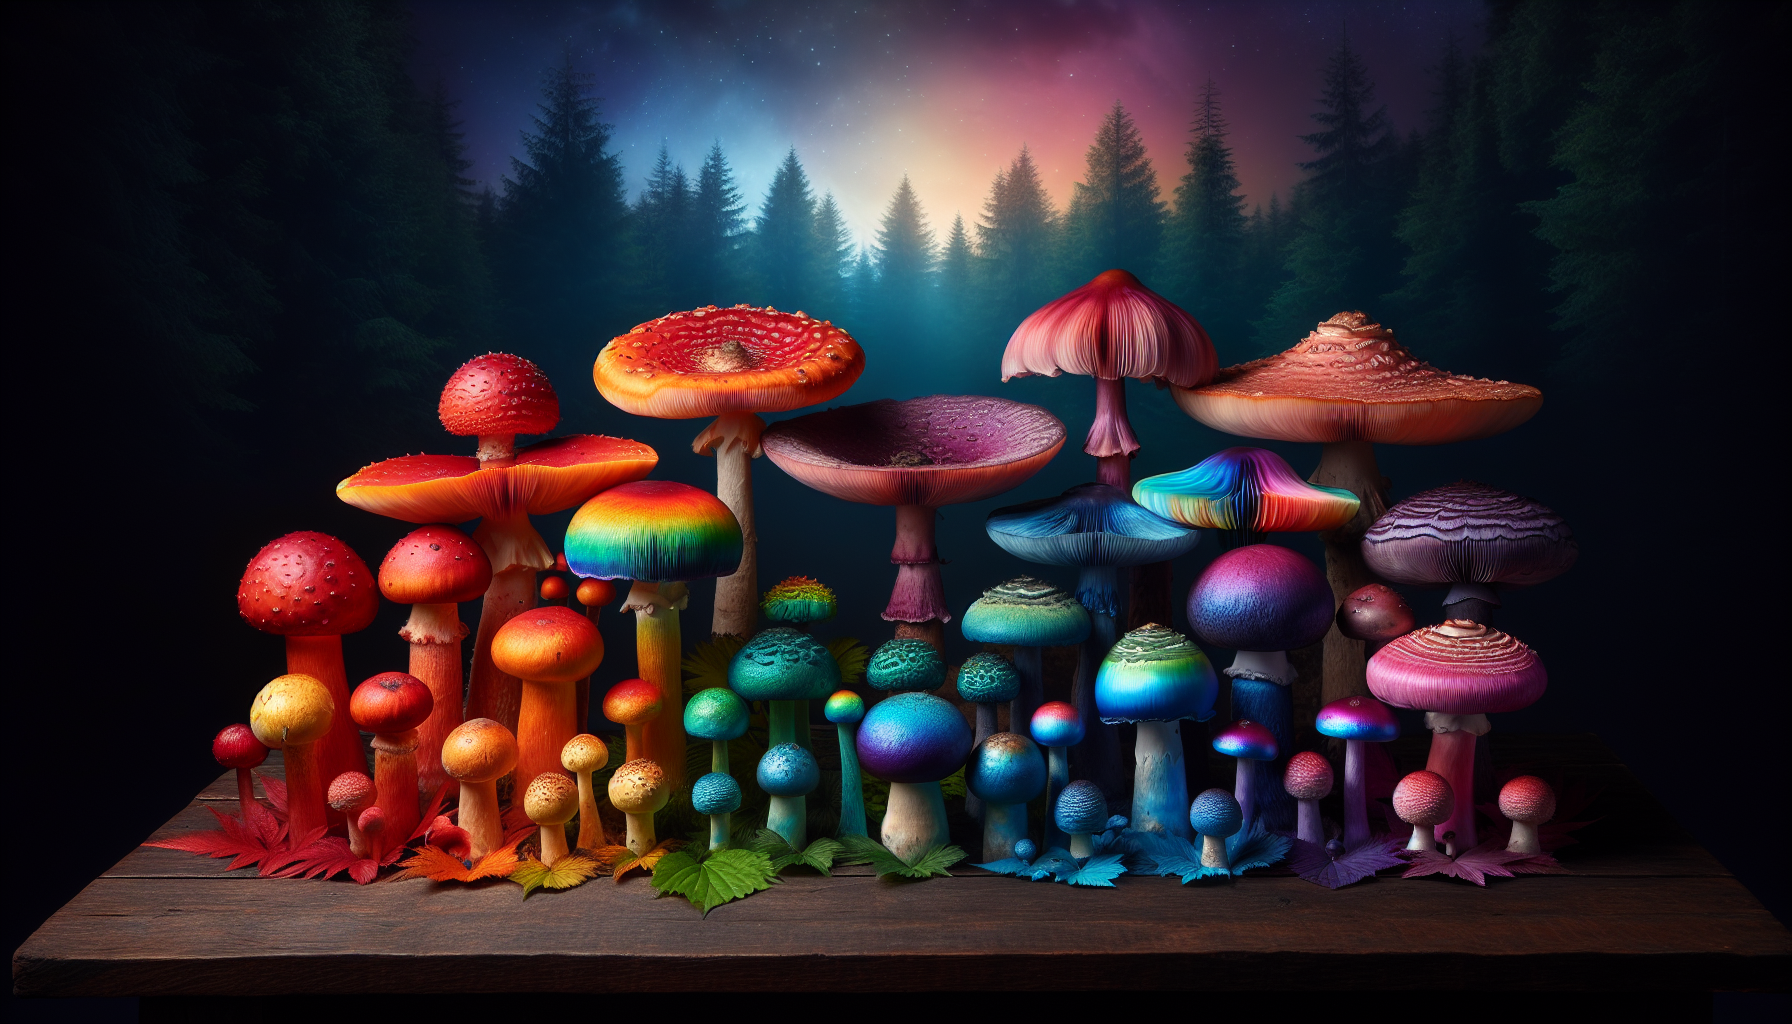 Illustration of premium magic mushrooms